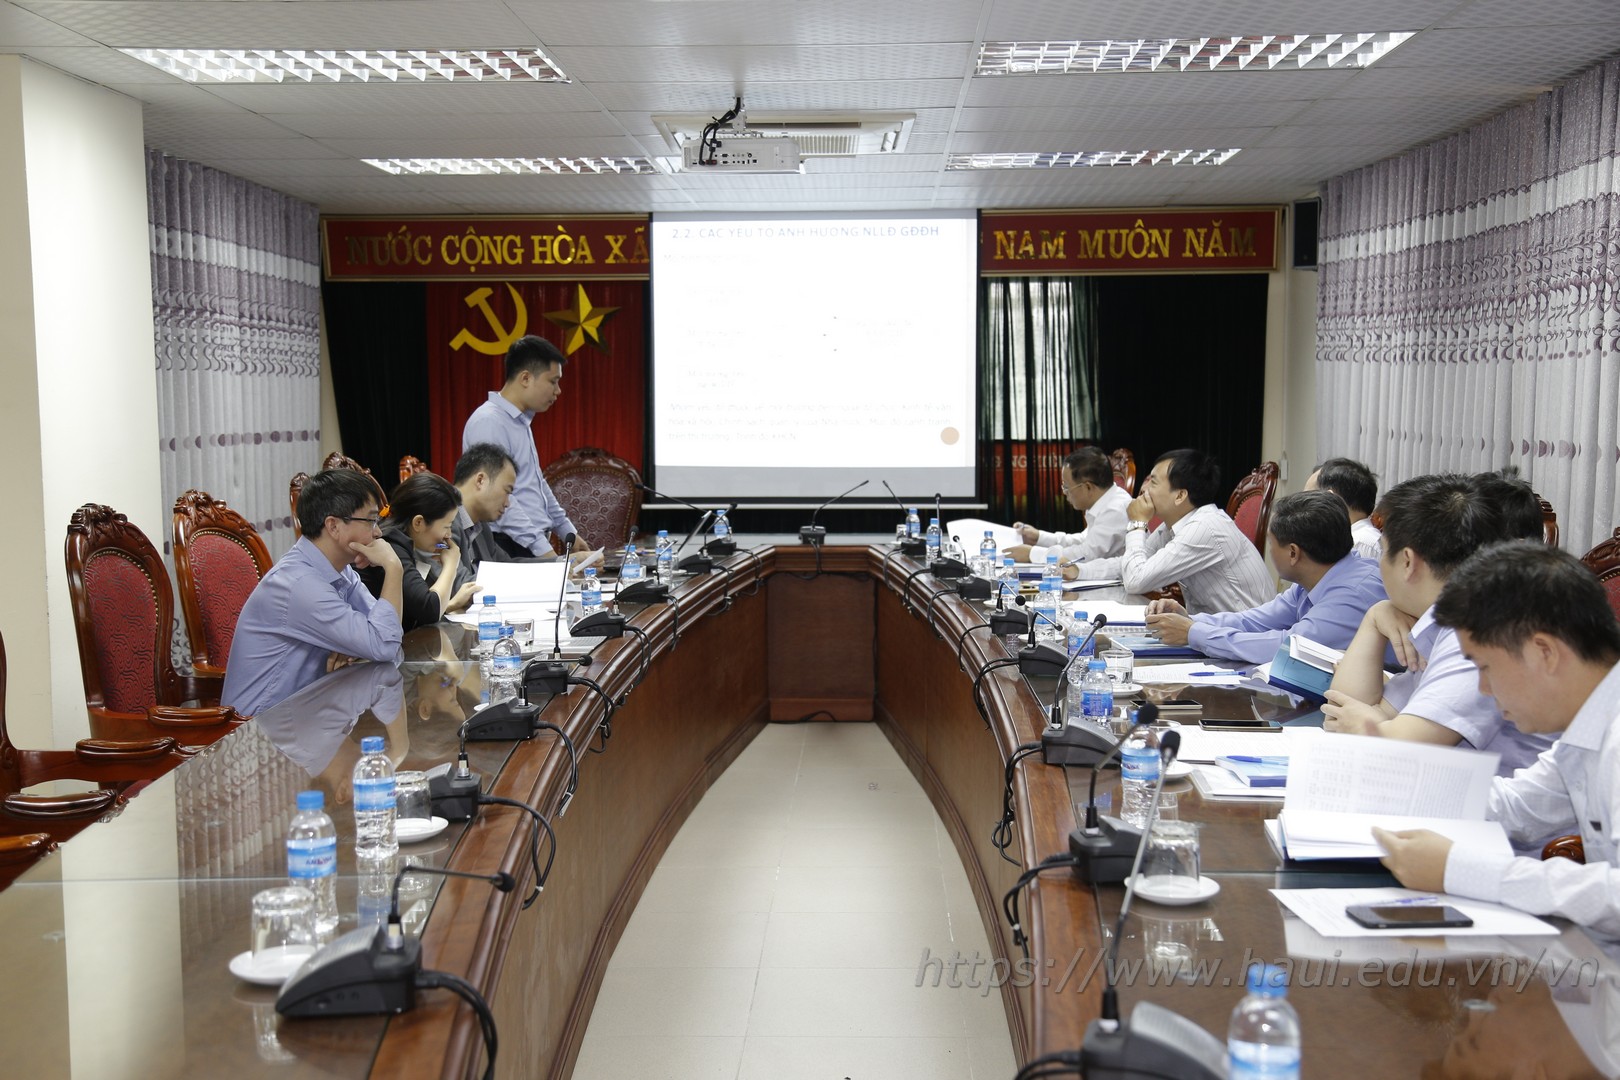 Đề tài NCKH cấp trường: “Nghiên cứu khung năng lực lãnh đạo của giám đốc điều hành các doanh nghiệp công nghiệp vừa và nhỏ ở Việt Nam hiện nay”